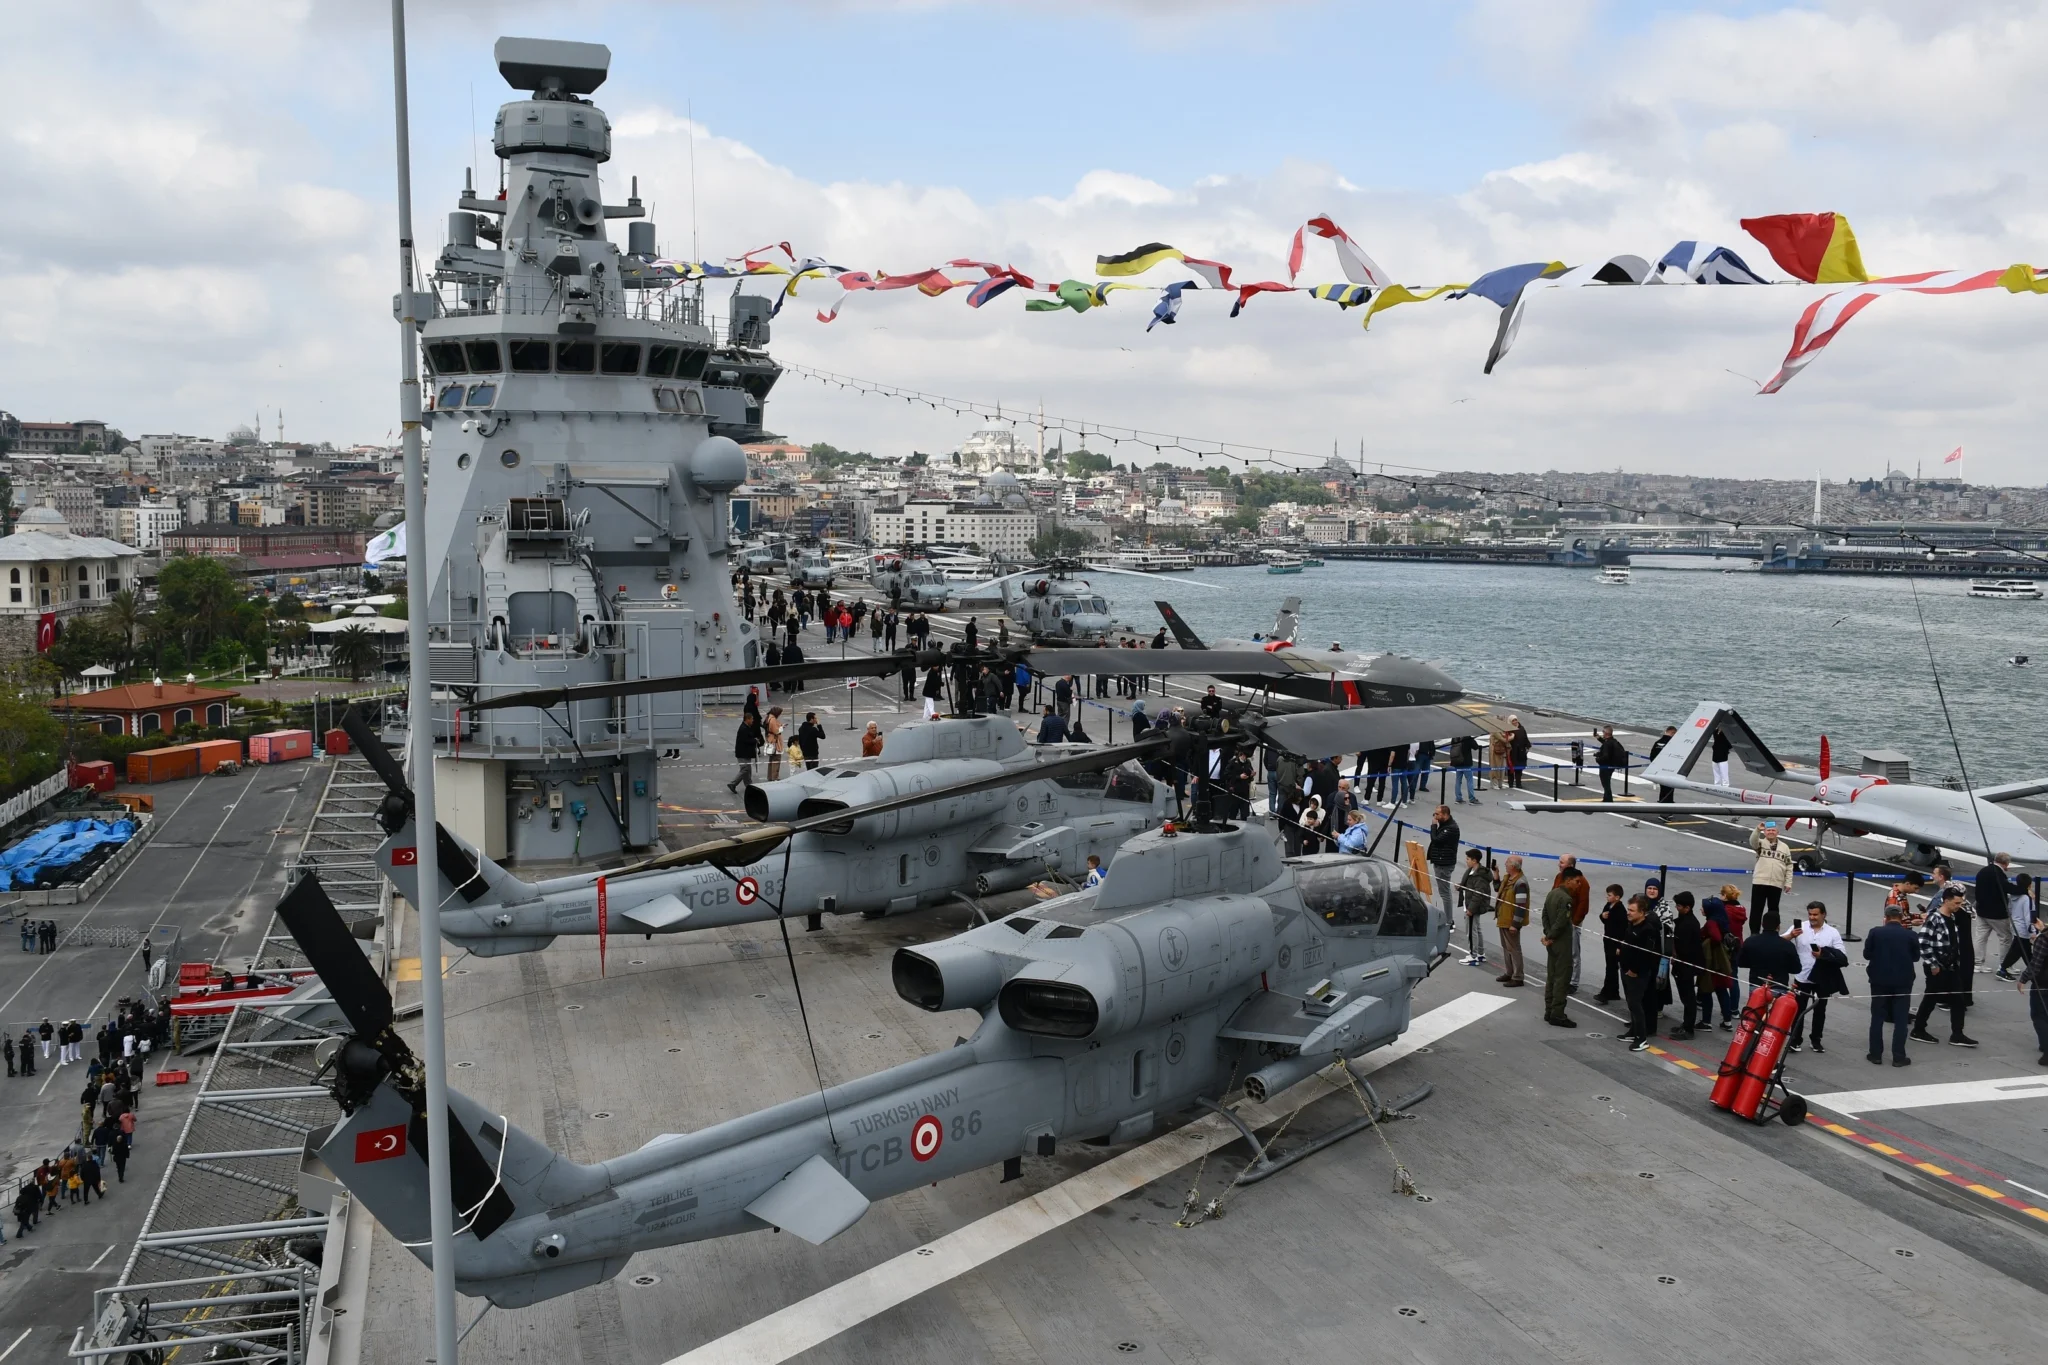 Sadece 6 gün içinde, dünyanın ilk SİHA'sı ve Türkiye'nin en büyük askeri gemisi olan TCG Anadolu, toplamda 40 bin 324 kişi tarafından ziyaret edildi.